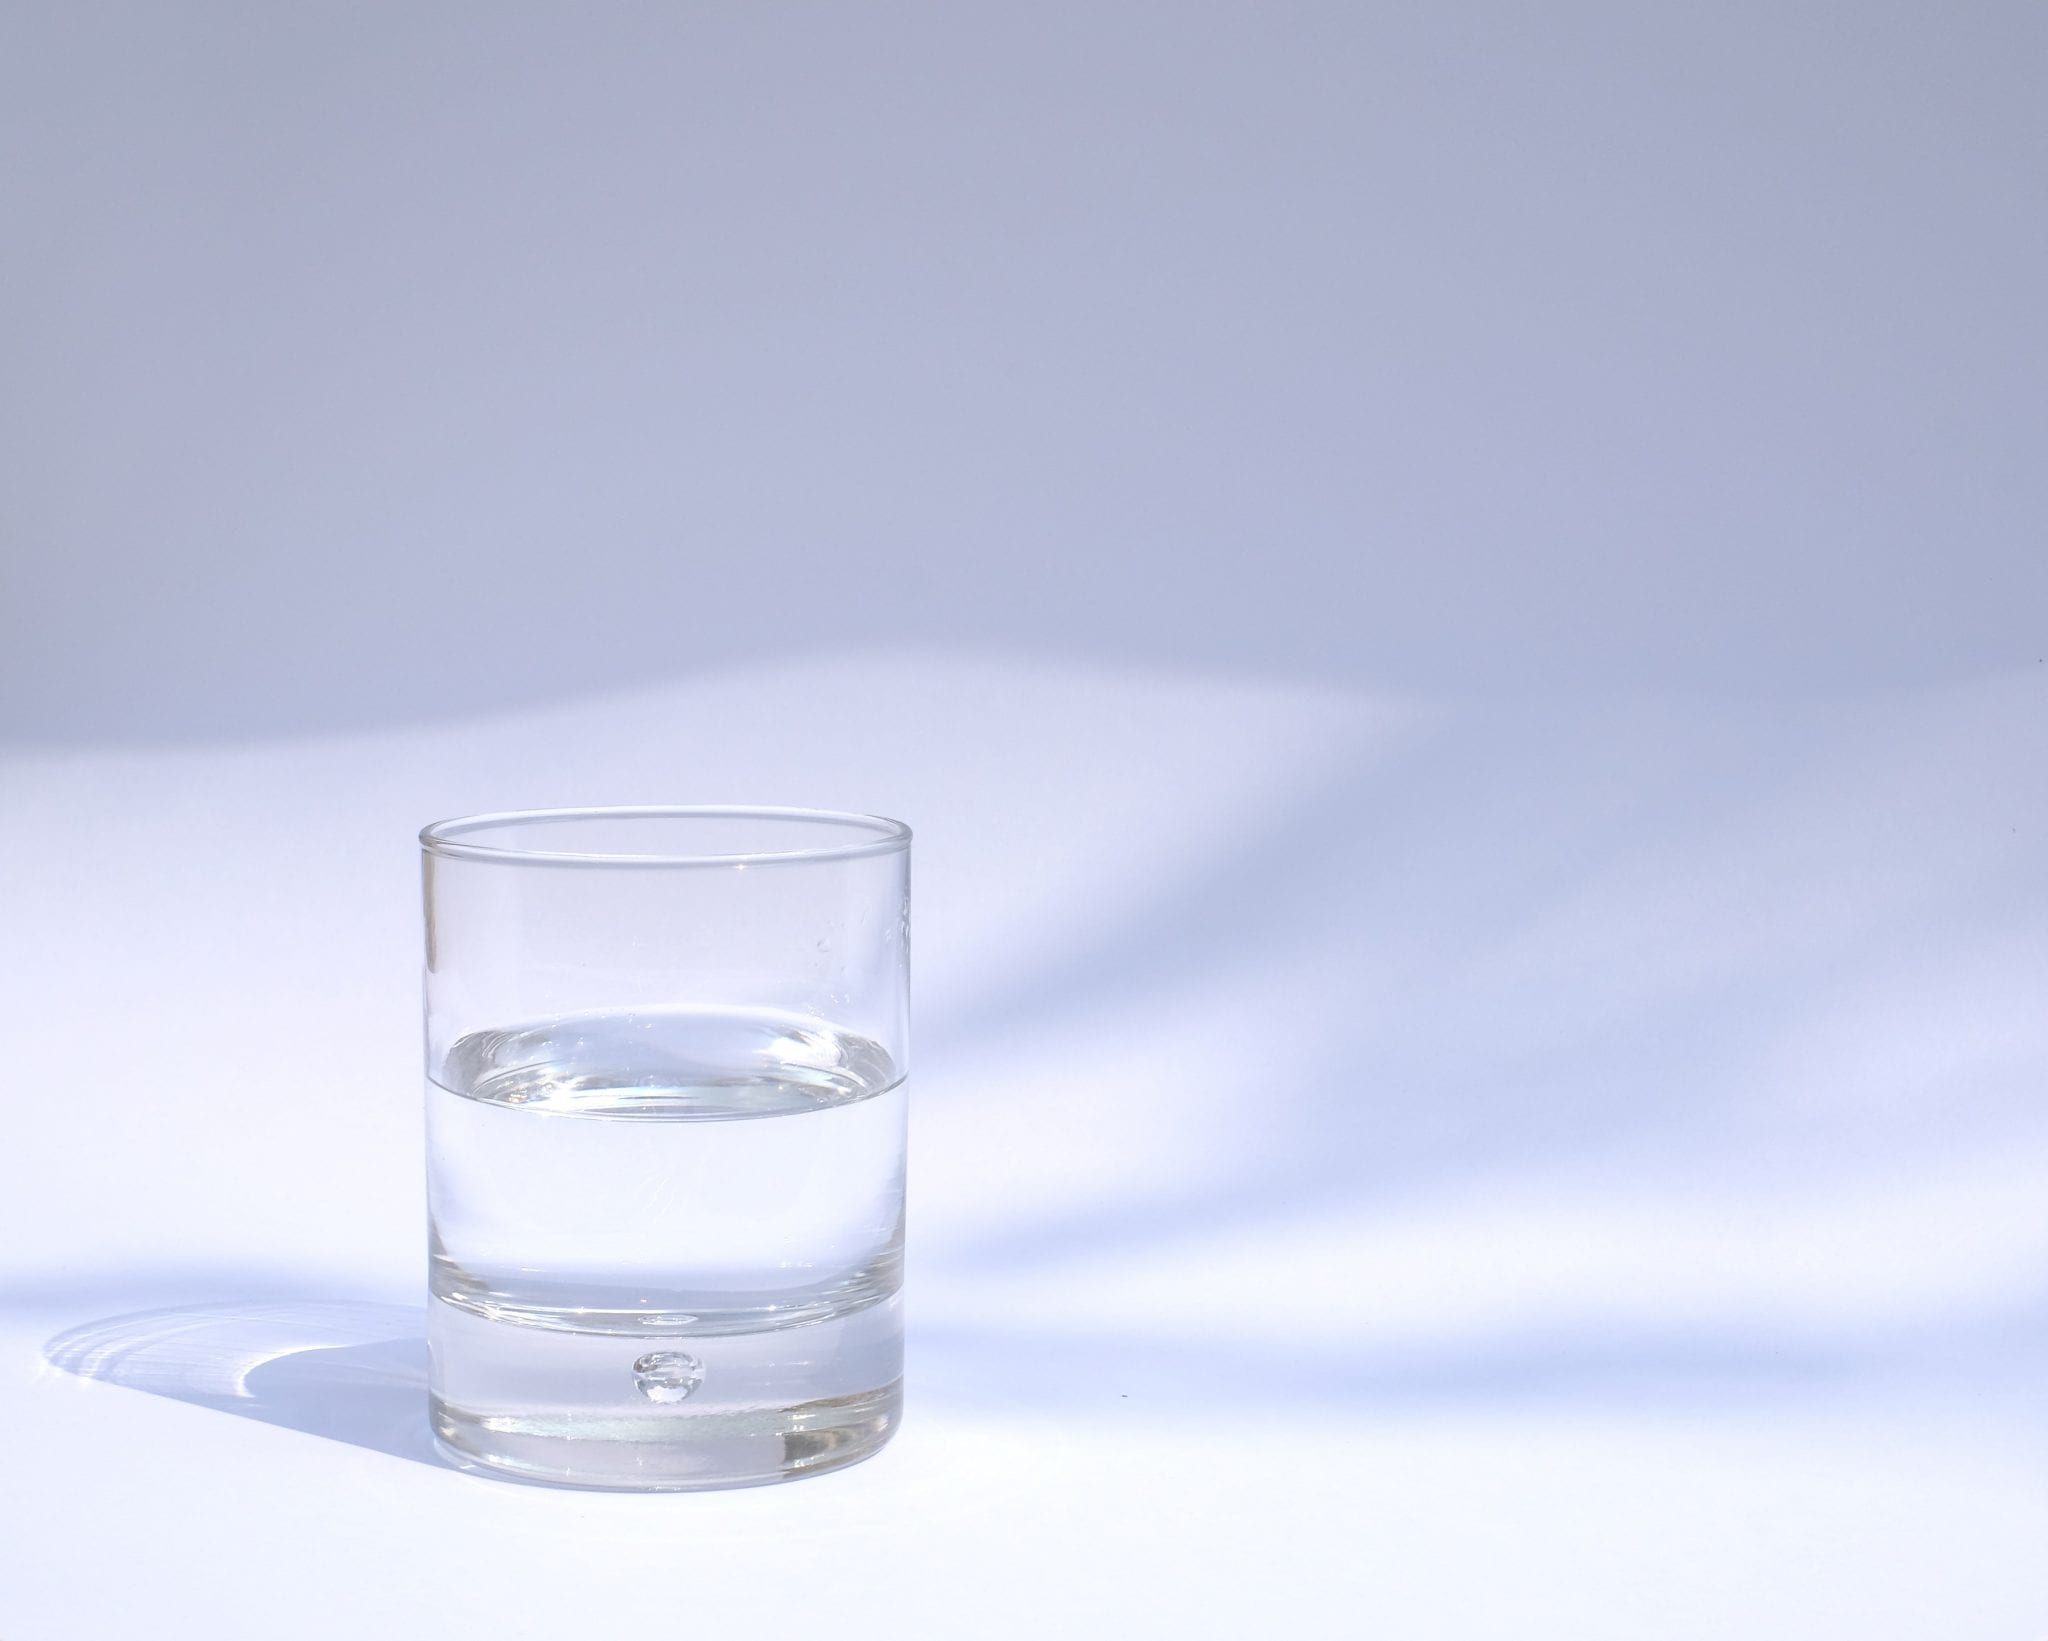 Voornaamwoord Uitgraving Grootste Hoe zwaar is een glas water? (Metafoor) - Instituut voor Durf en Daadkracht